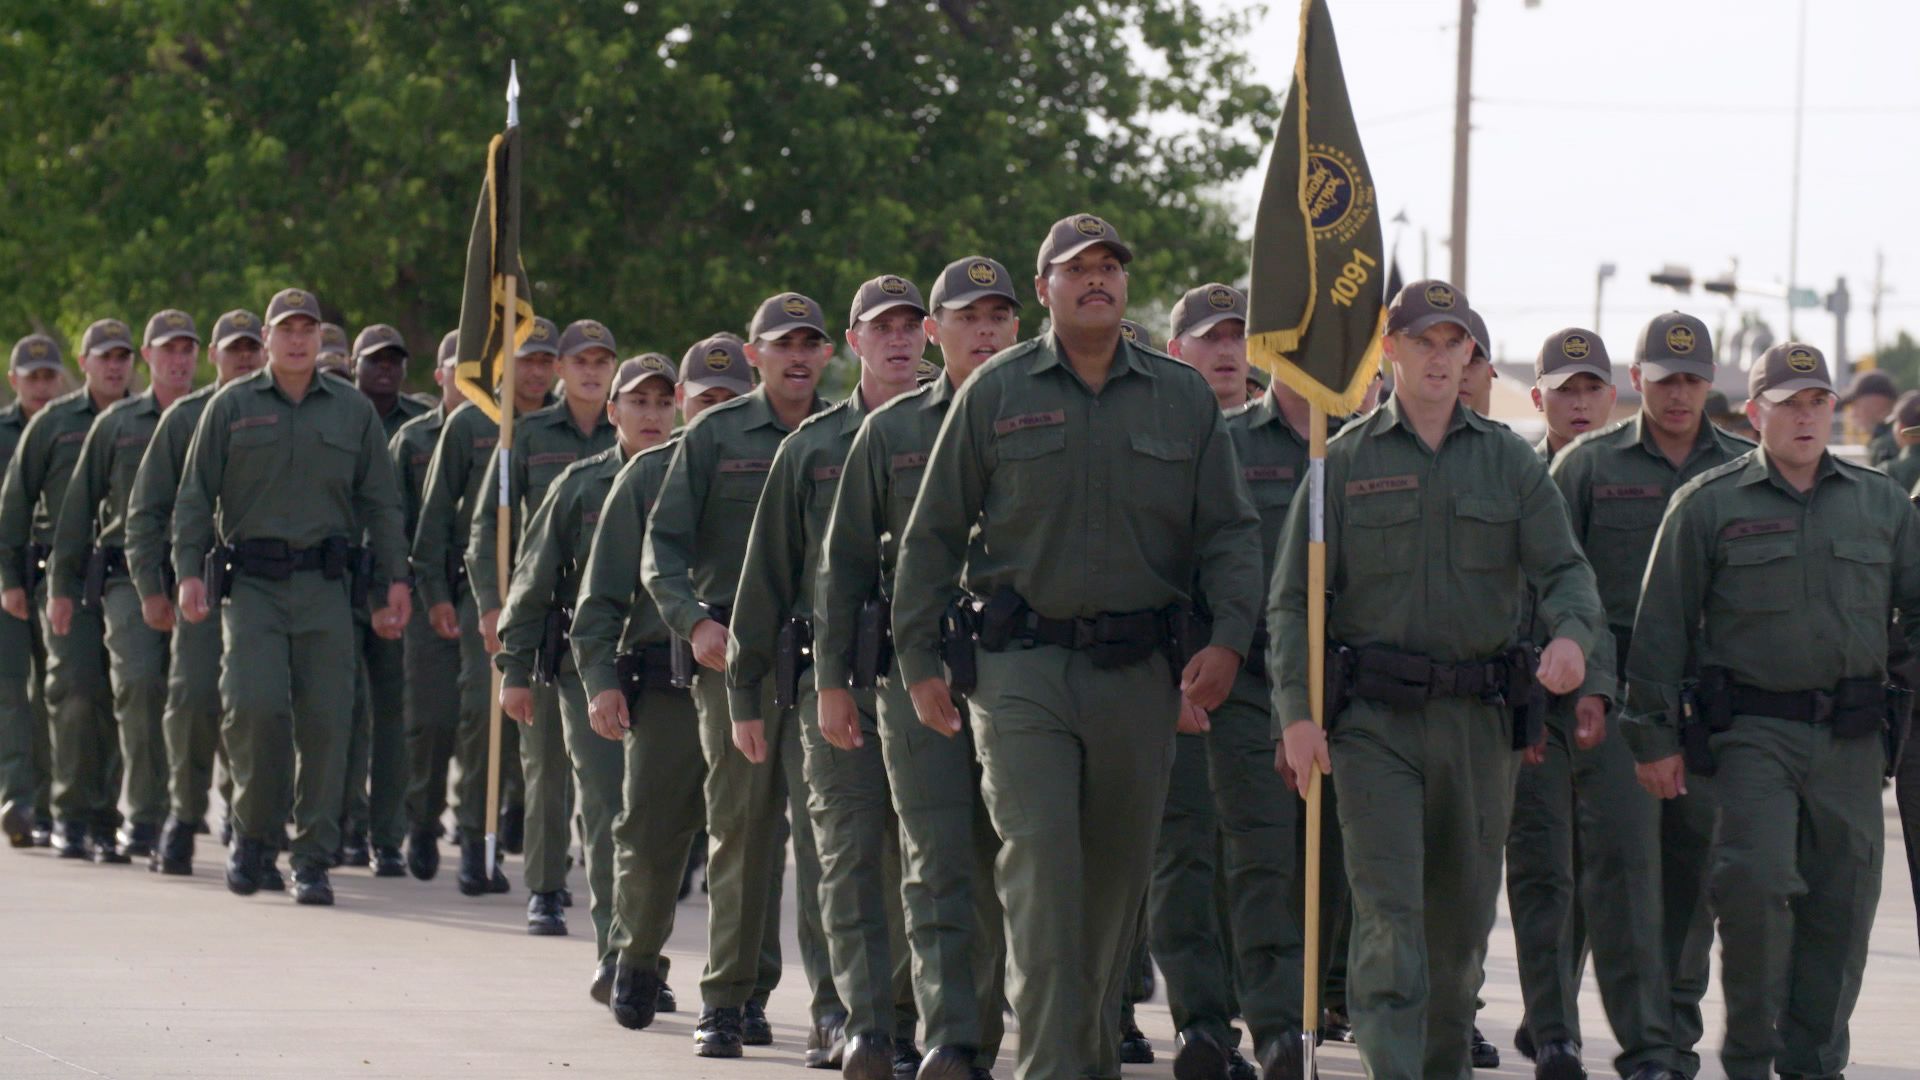 U.S. Border Patrol announces citizen's academy